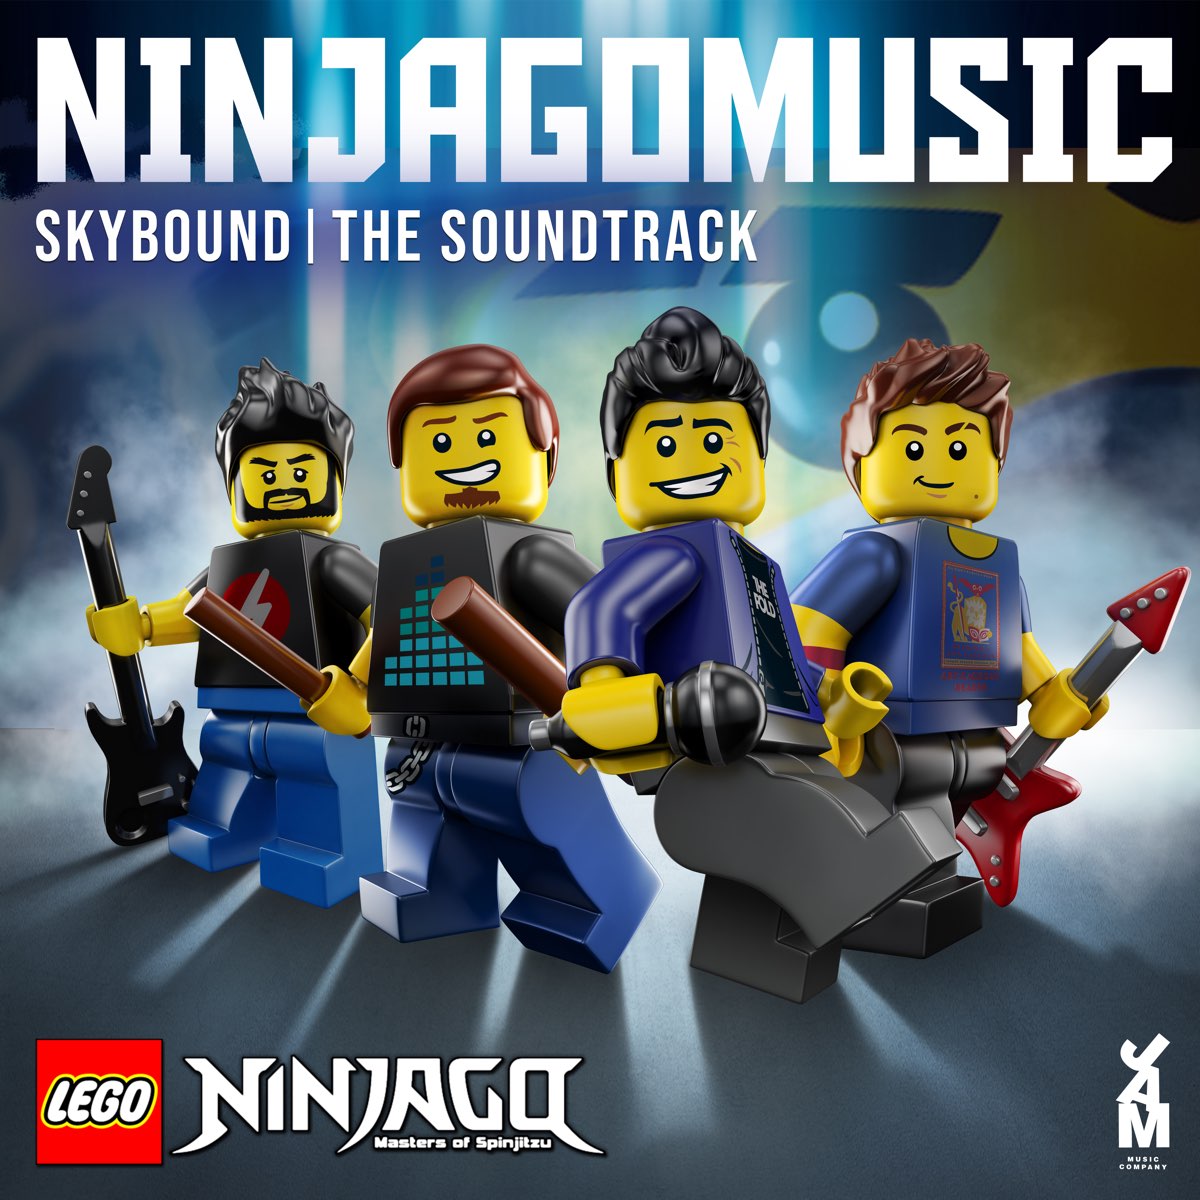 Lego Ninjago: Skybound (Original Soundtrack) - EP by Ninjago Music & The  Fold on Apple Music